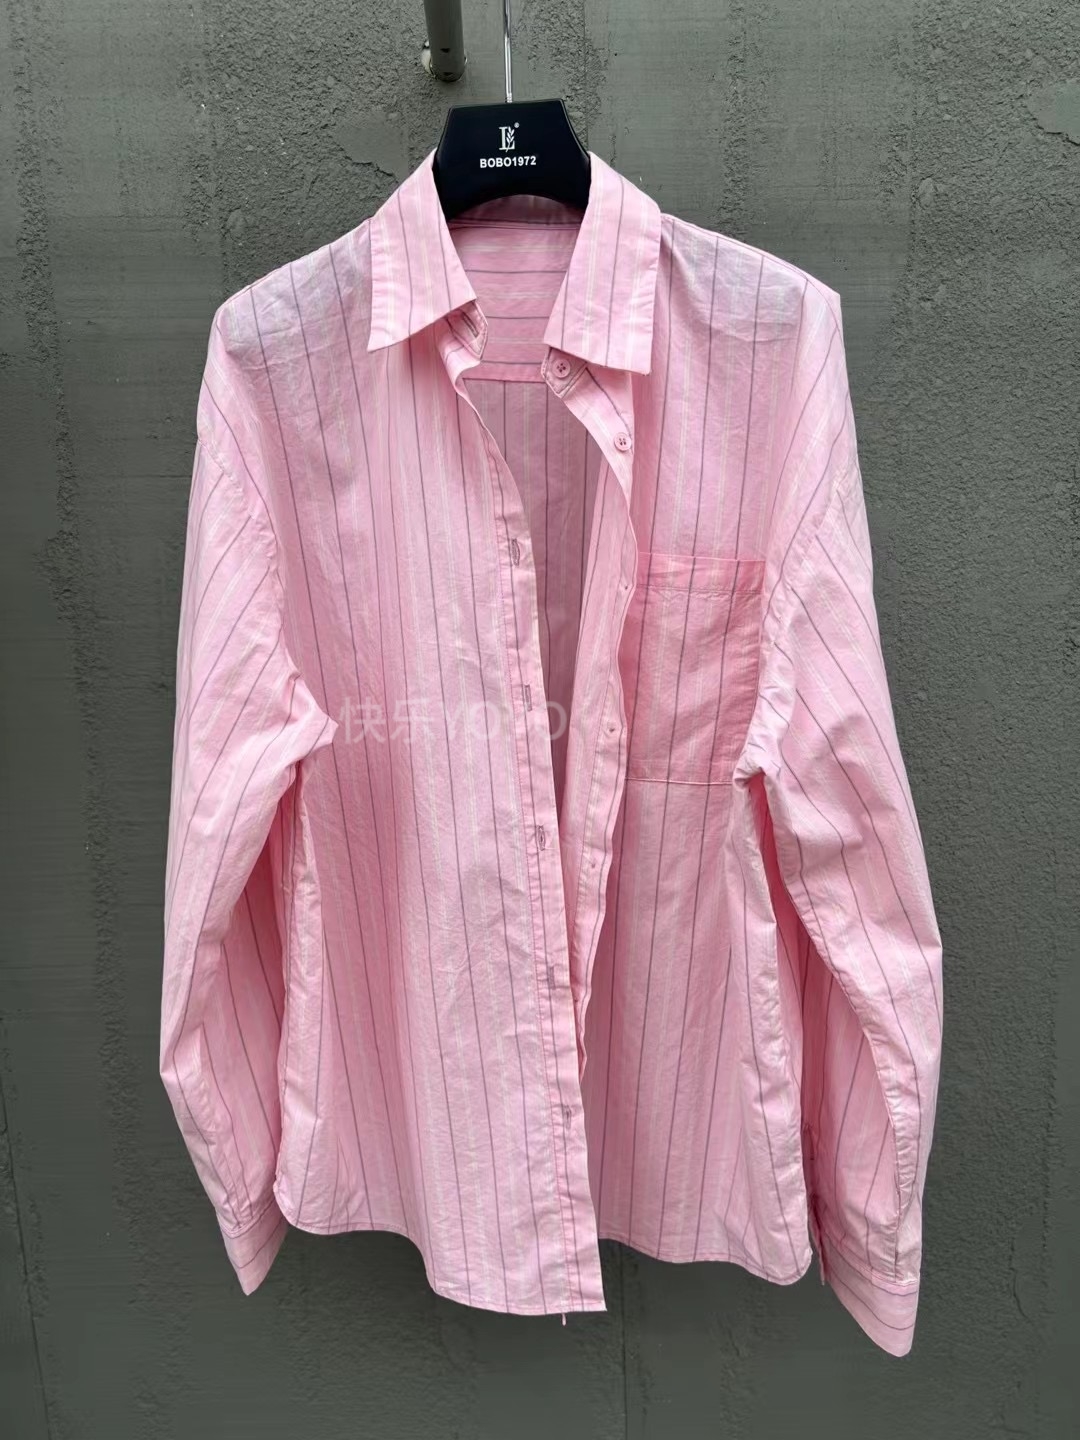 欧货bobo1972夏季防晒衬衫宽松显瘦chic减龄上衣粉色休闲条纹衬